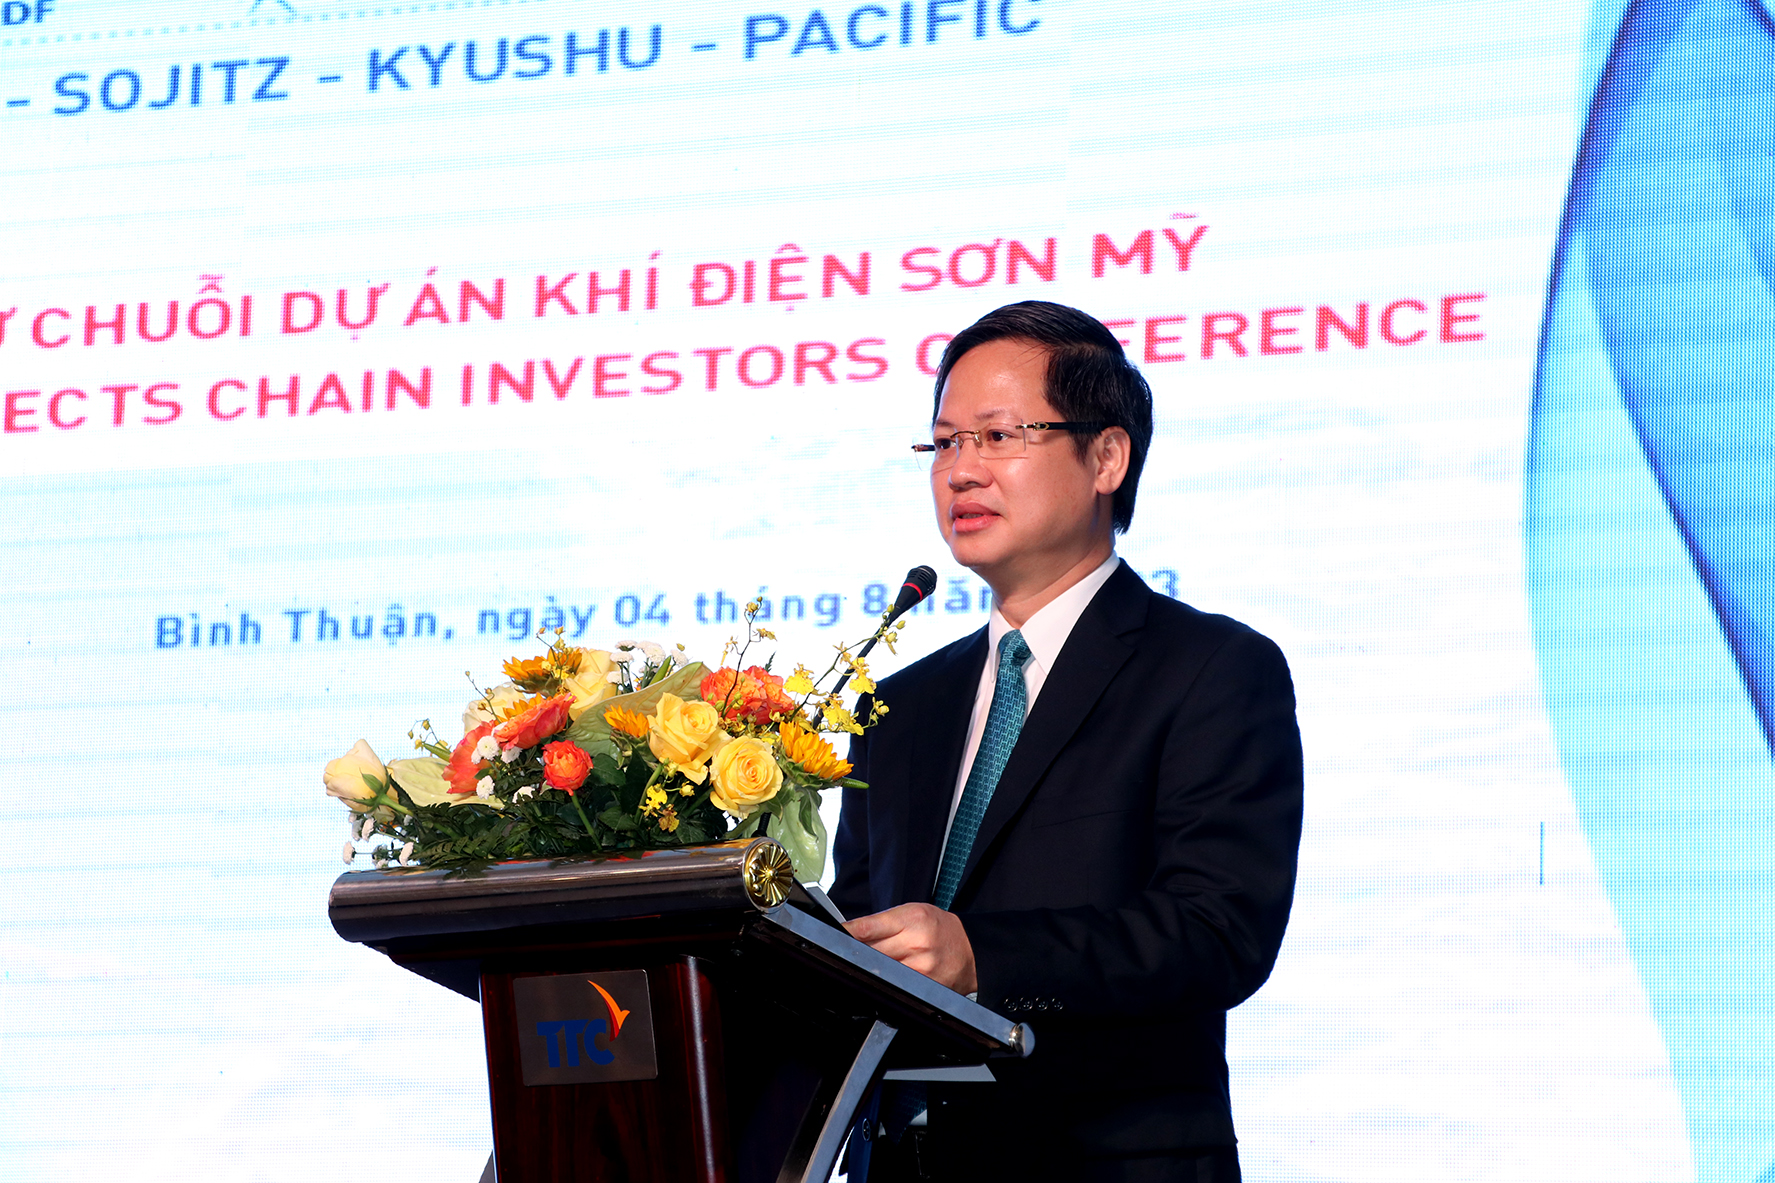 Nhiều nhà đầu tư lớn từ các nước Mỹ, Pháp, Nhật Bản đến Bình Thuận đầu tư chuỗi dự án khí - điện Sơn Mỹ - Ảnh 4.